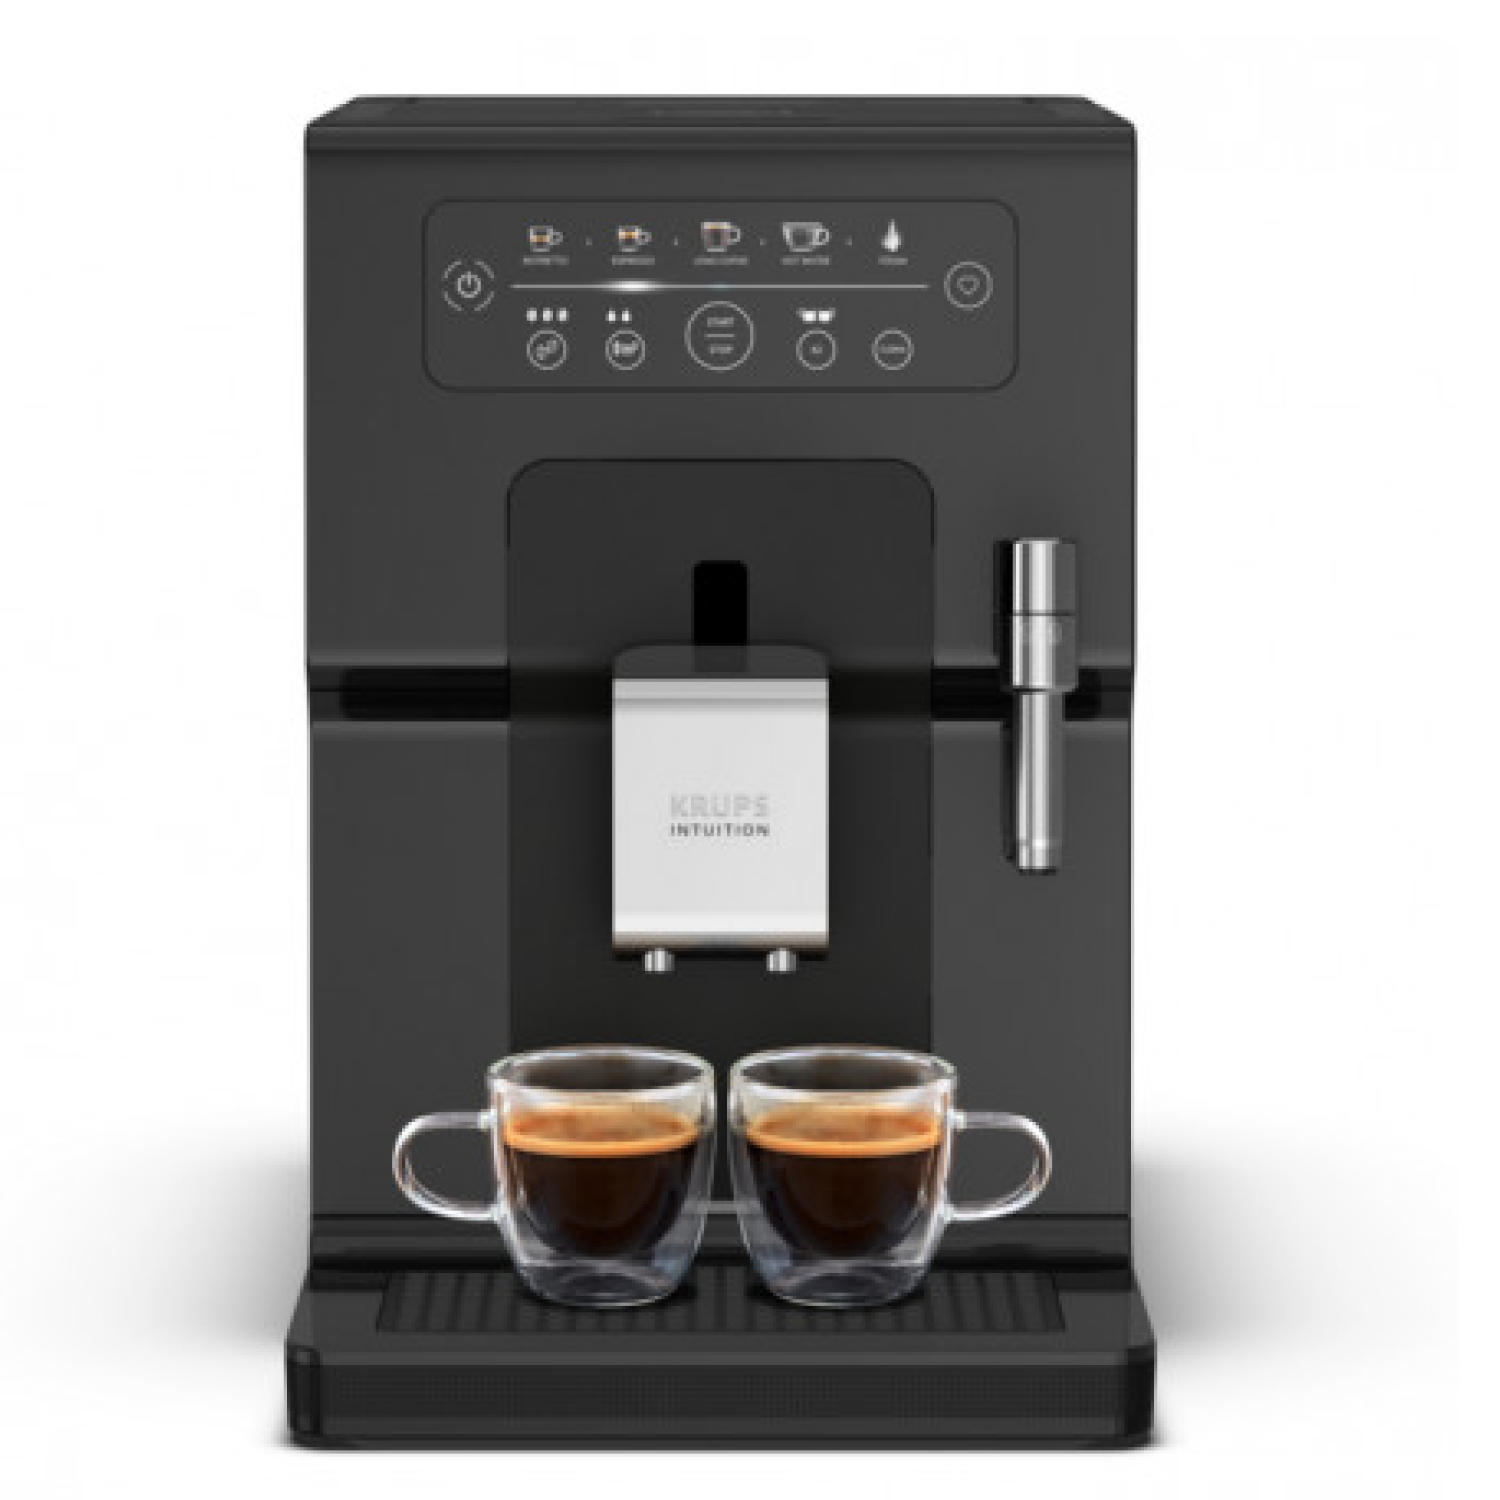 Автоматическая кофемашина Krups Intuition Essential EA870810, цвет черный